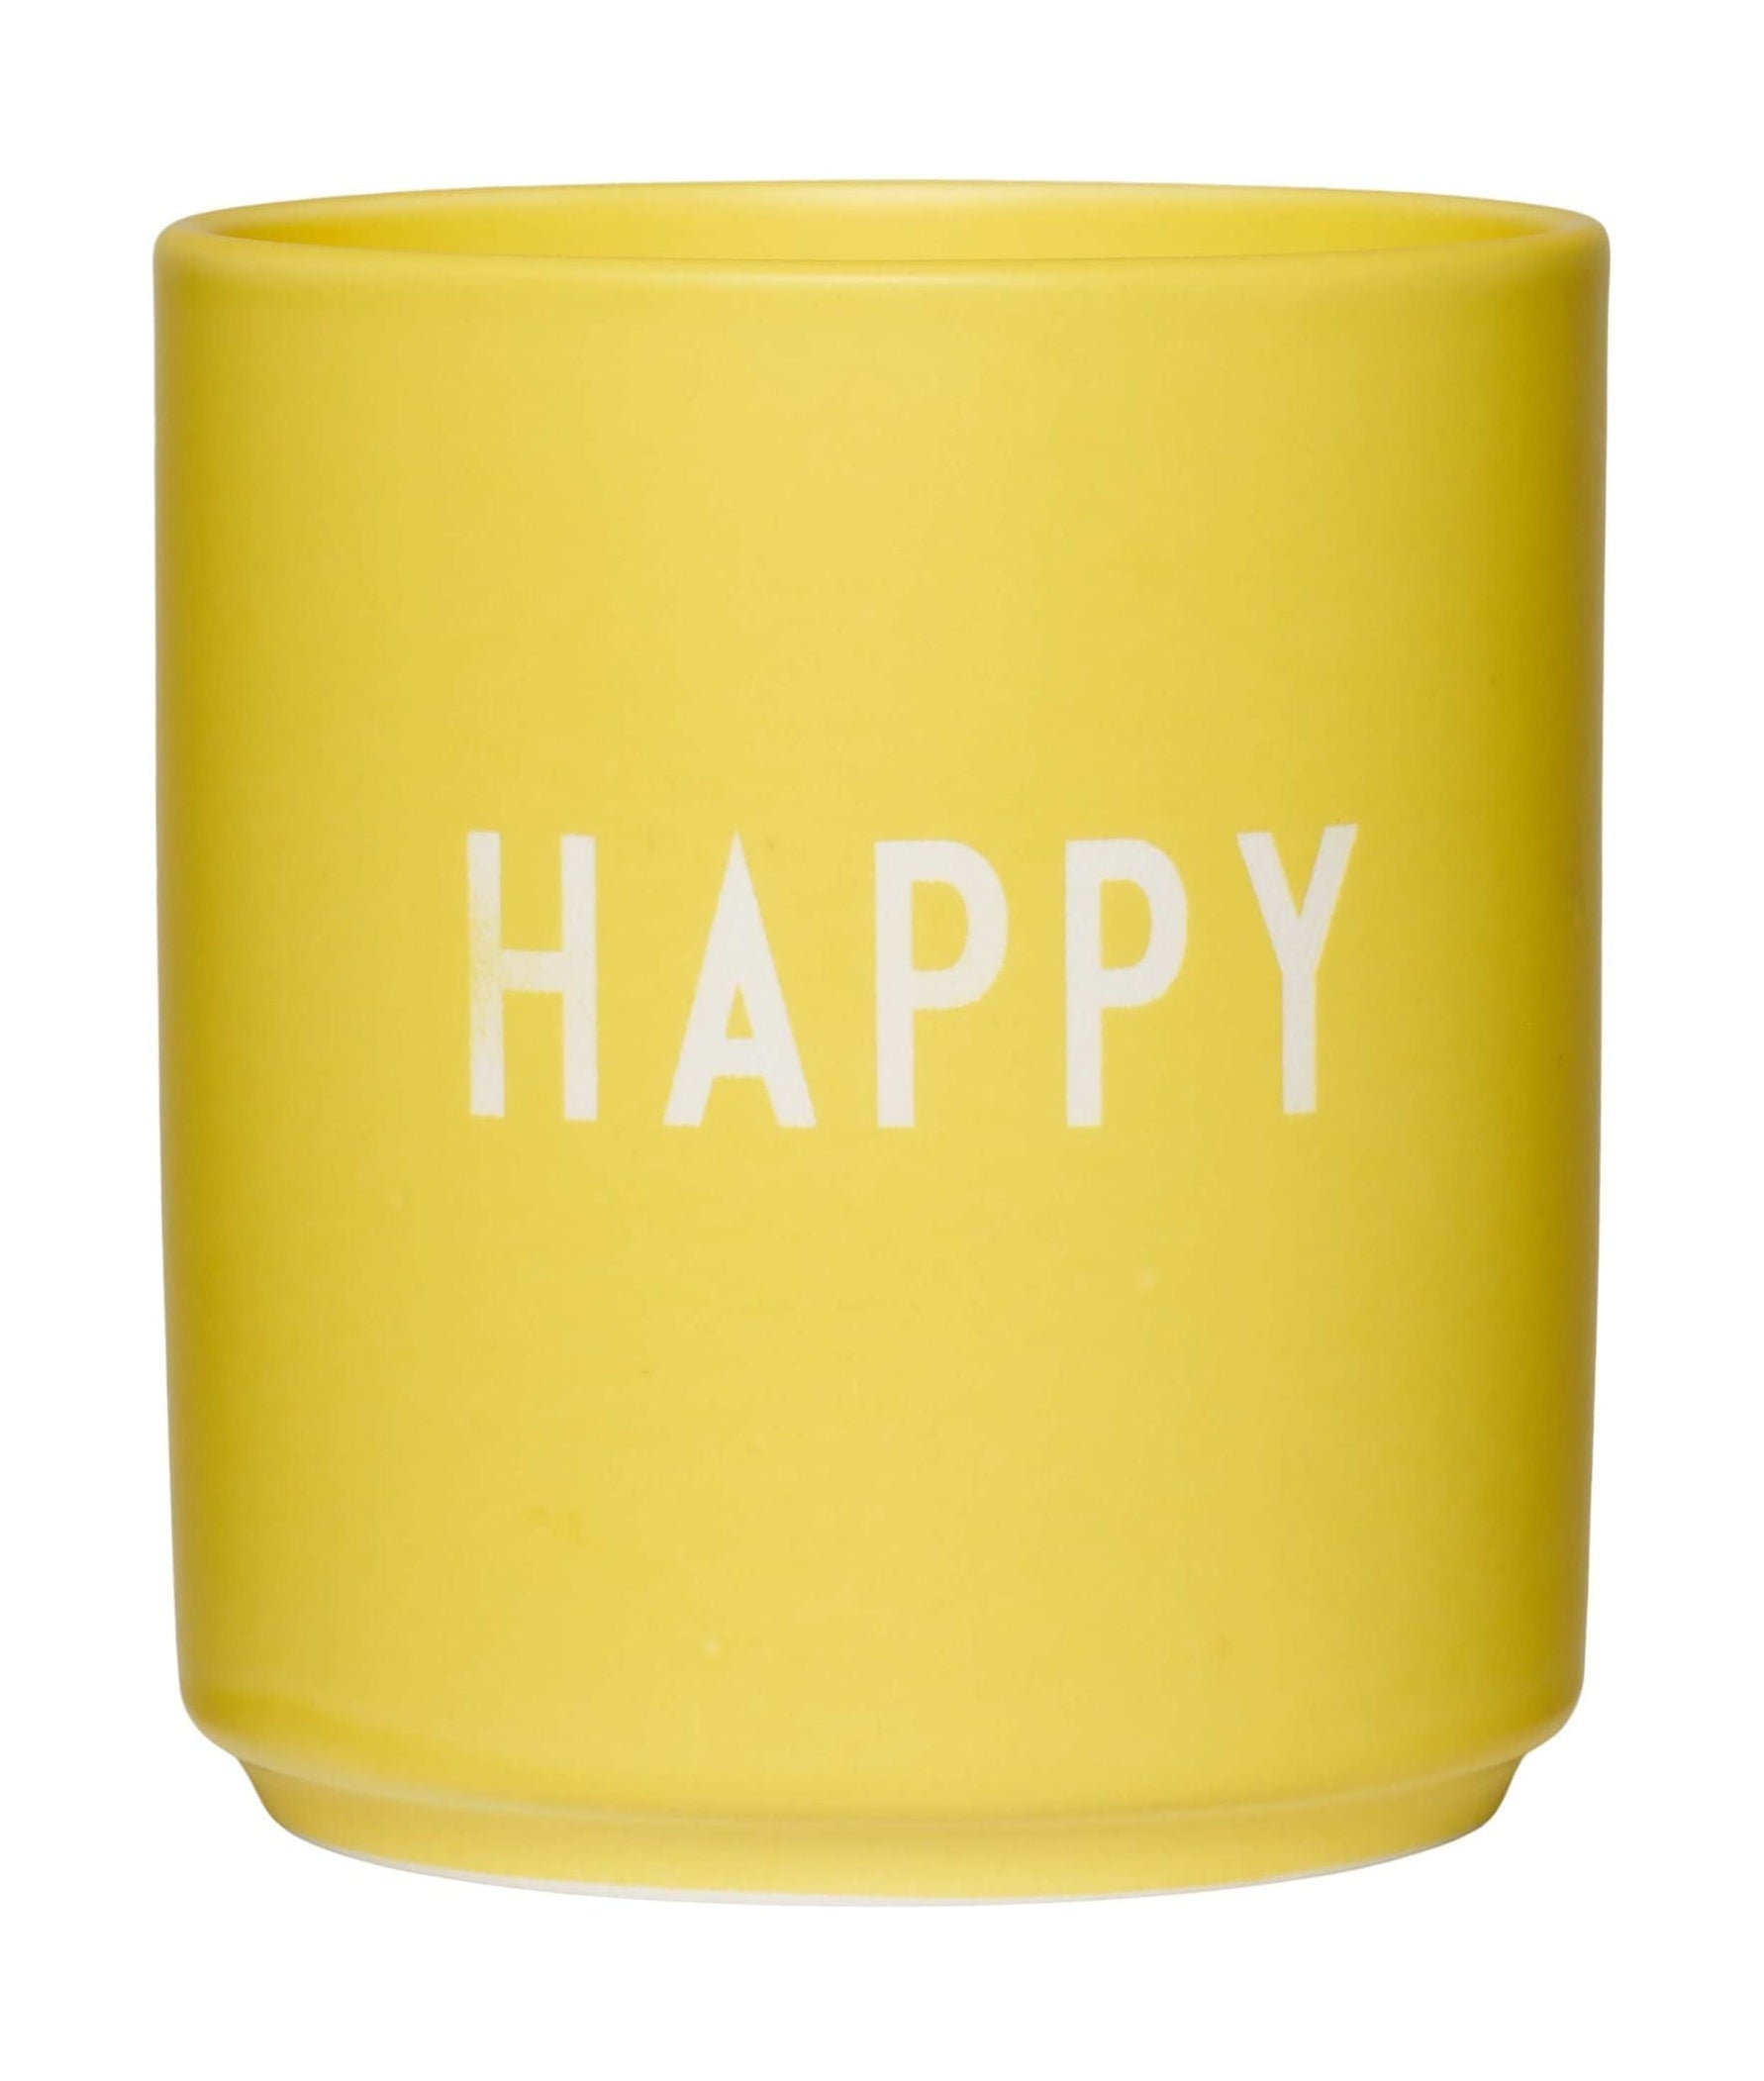 Mug da tazza preferita per lettere di design felice, giallo